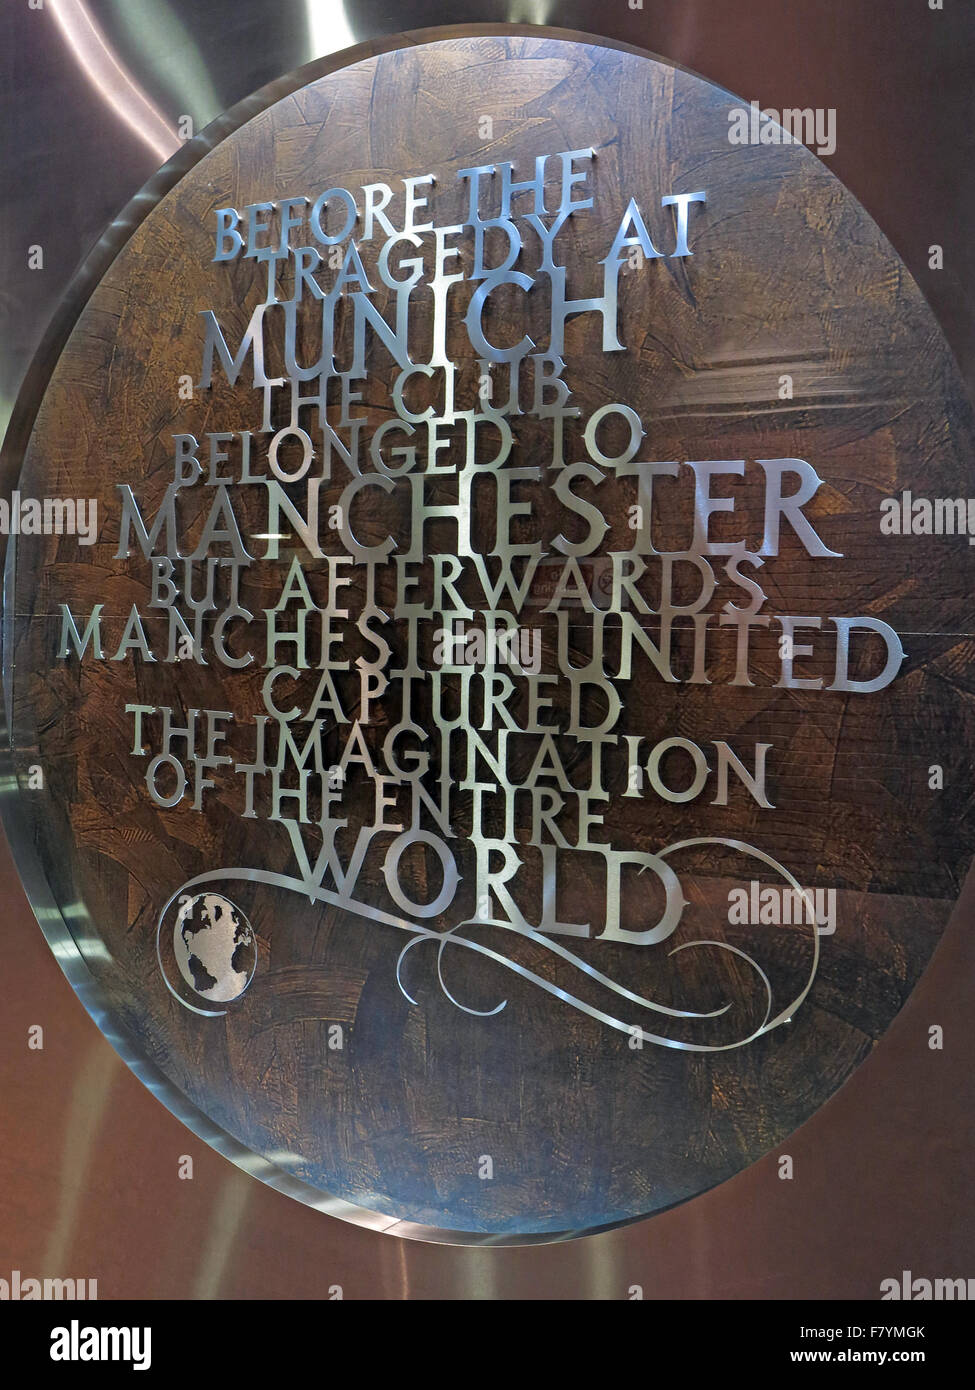 MUFC,Munich,memorial Old Trafford, Manchester United,Angleterre,UK. 'Avant la tragédie de Munich, le club appartenait à Manchester' Banque D'Images